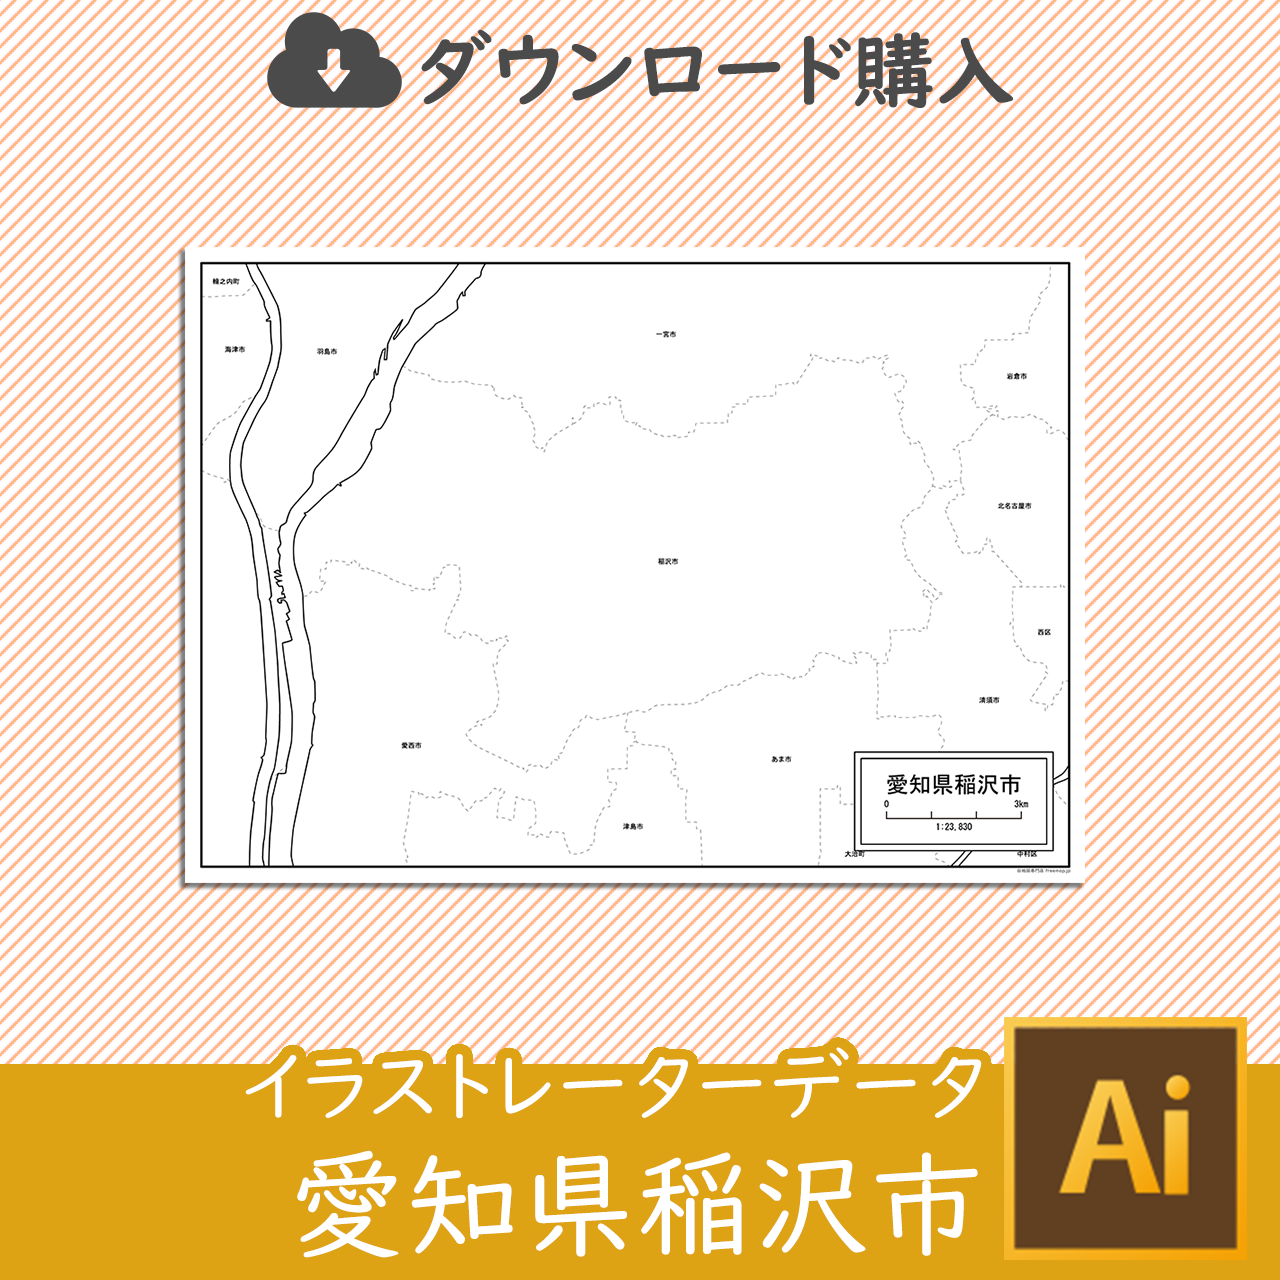 稲沢市のaiデータのサムネイル画像